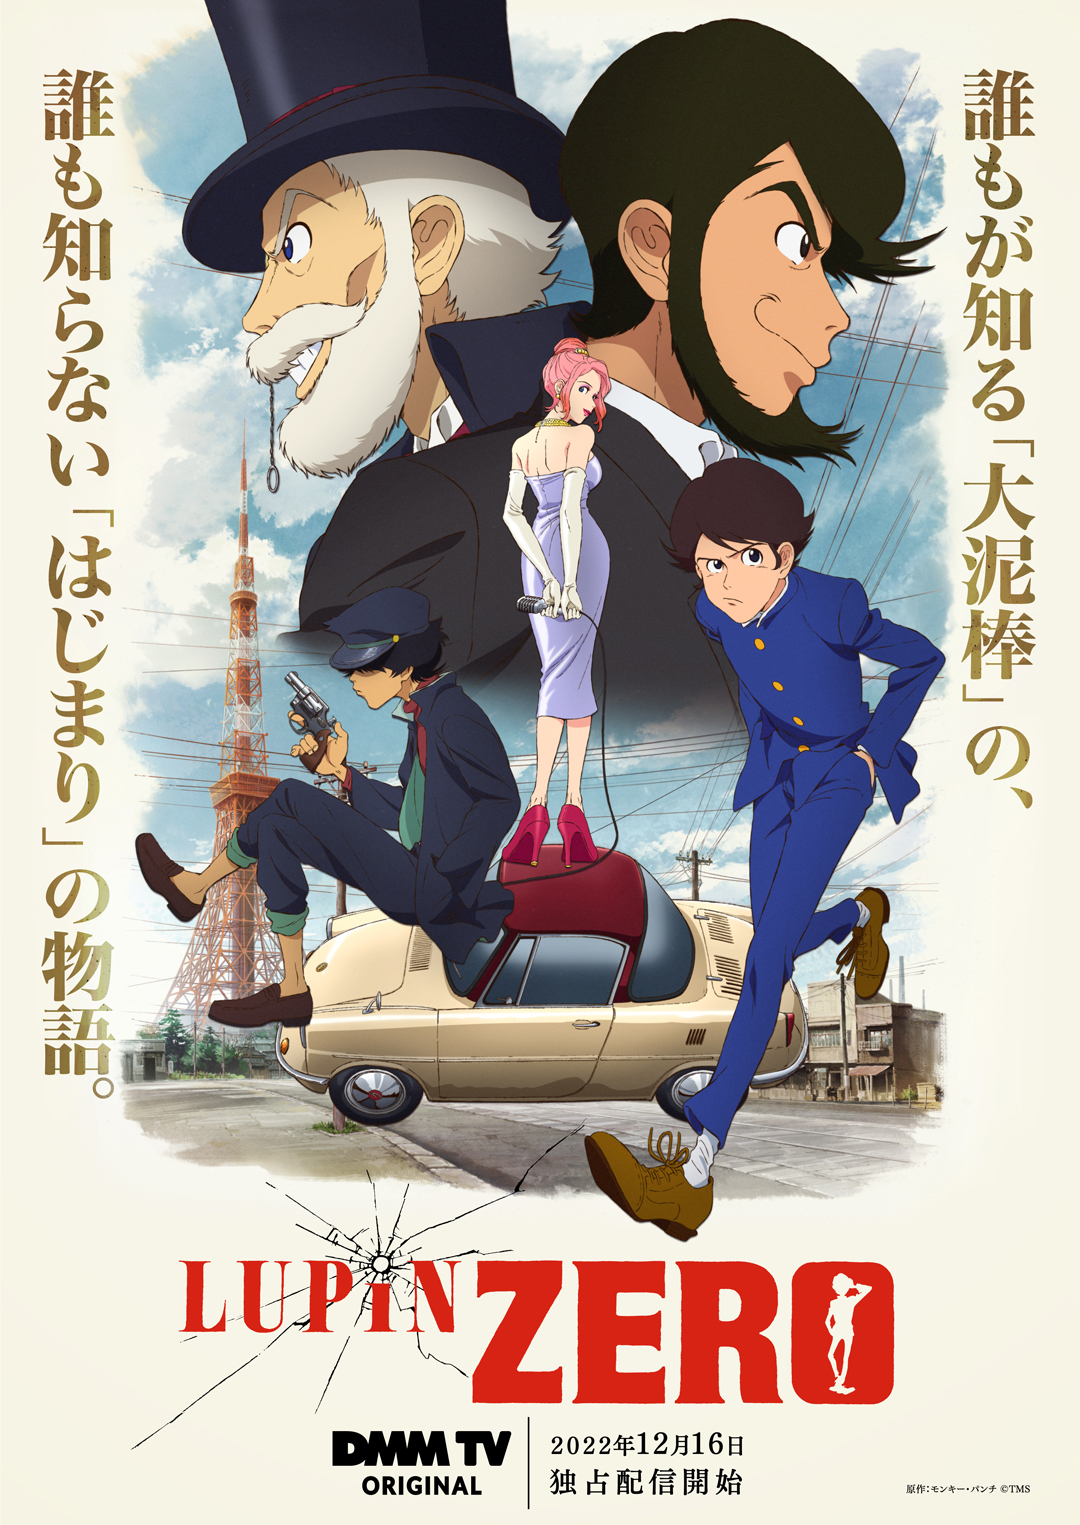 《魯邦三世》衍生動畫《LUPIN ZERO》公開正式預告，12月16日開播